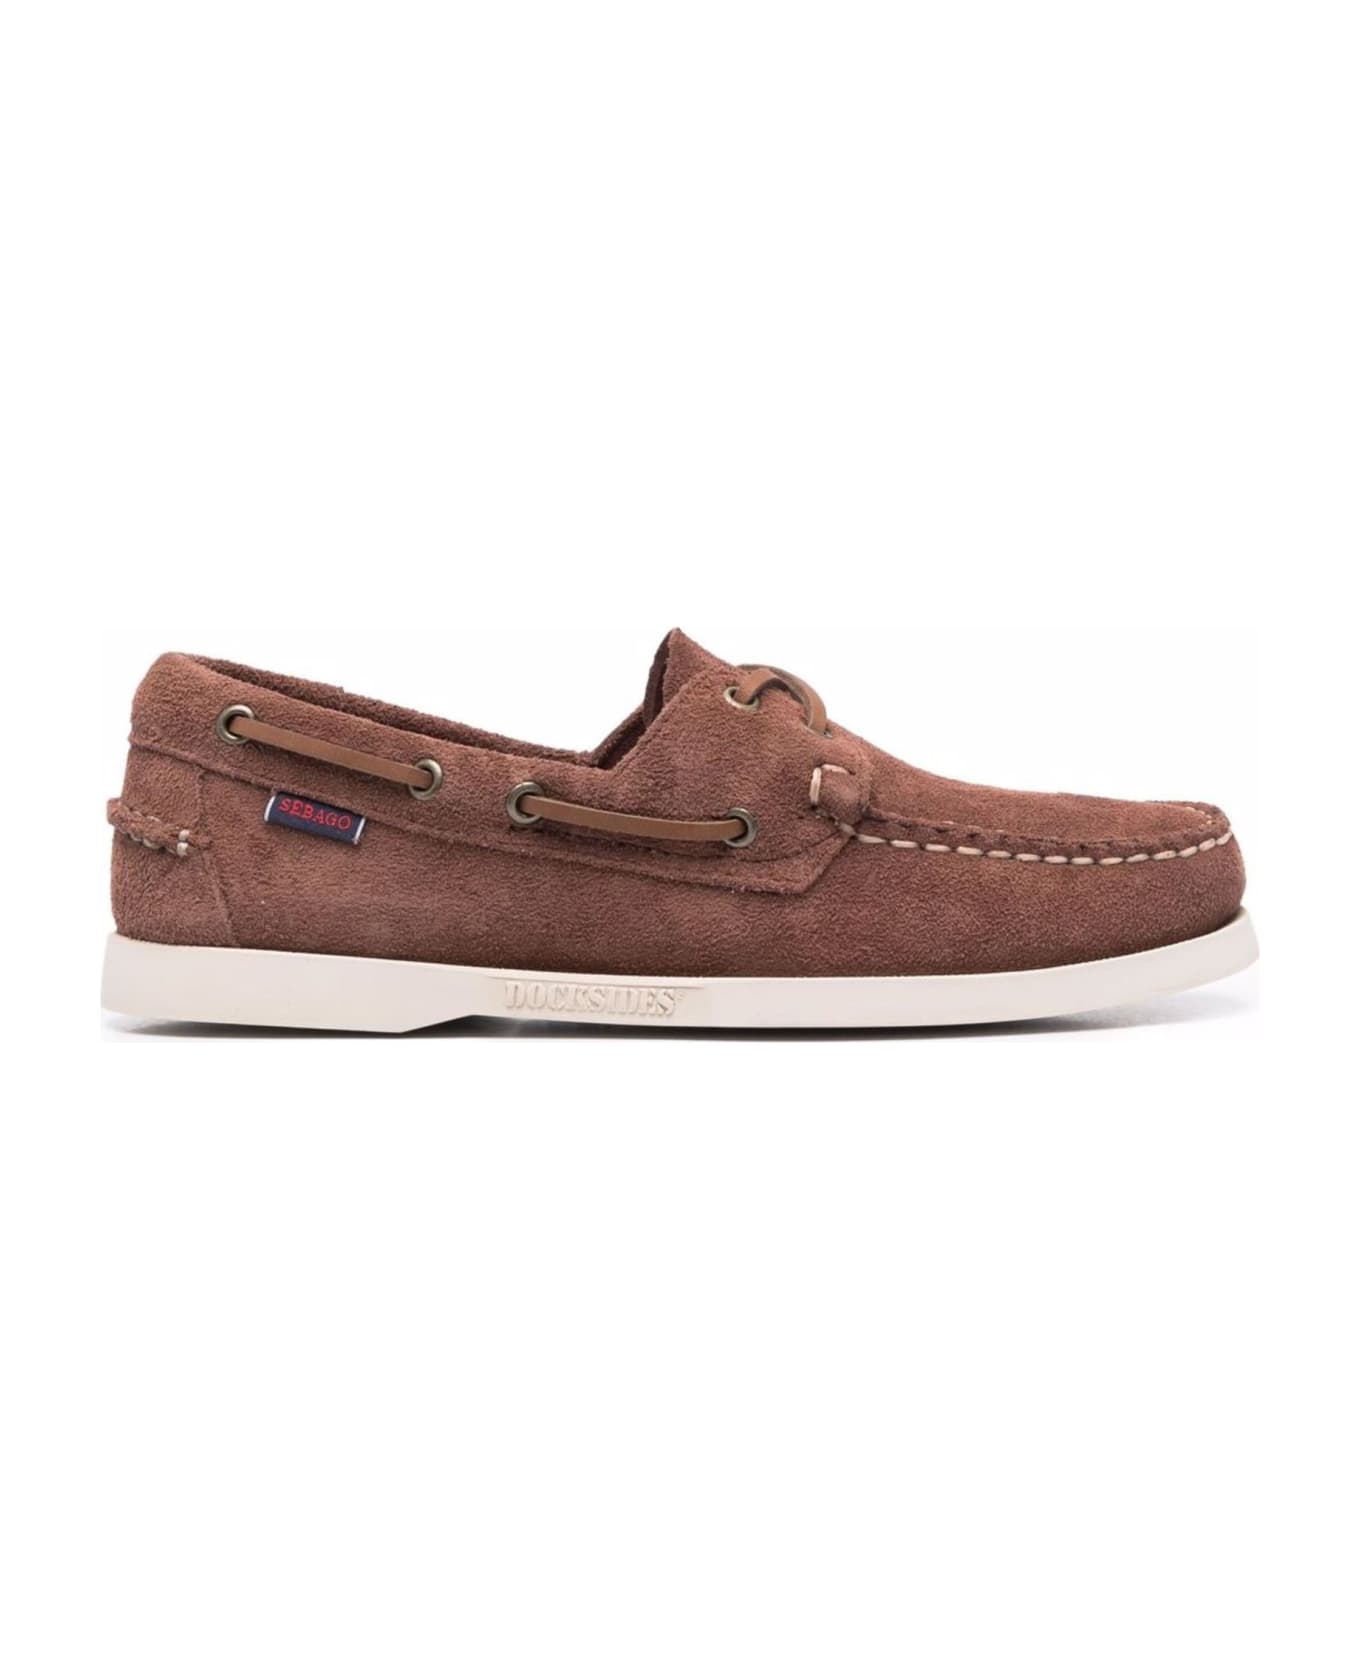 Sebago Flat Shoes Brown - Brown